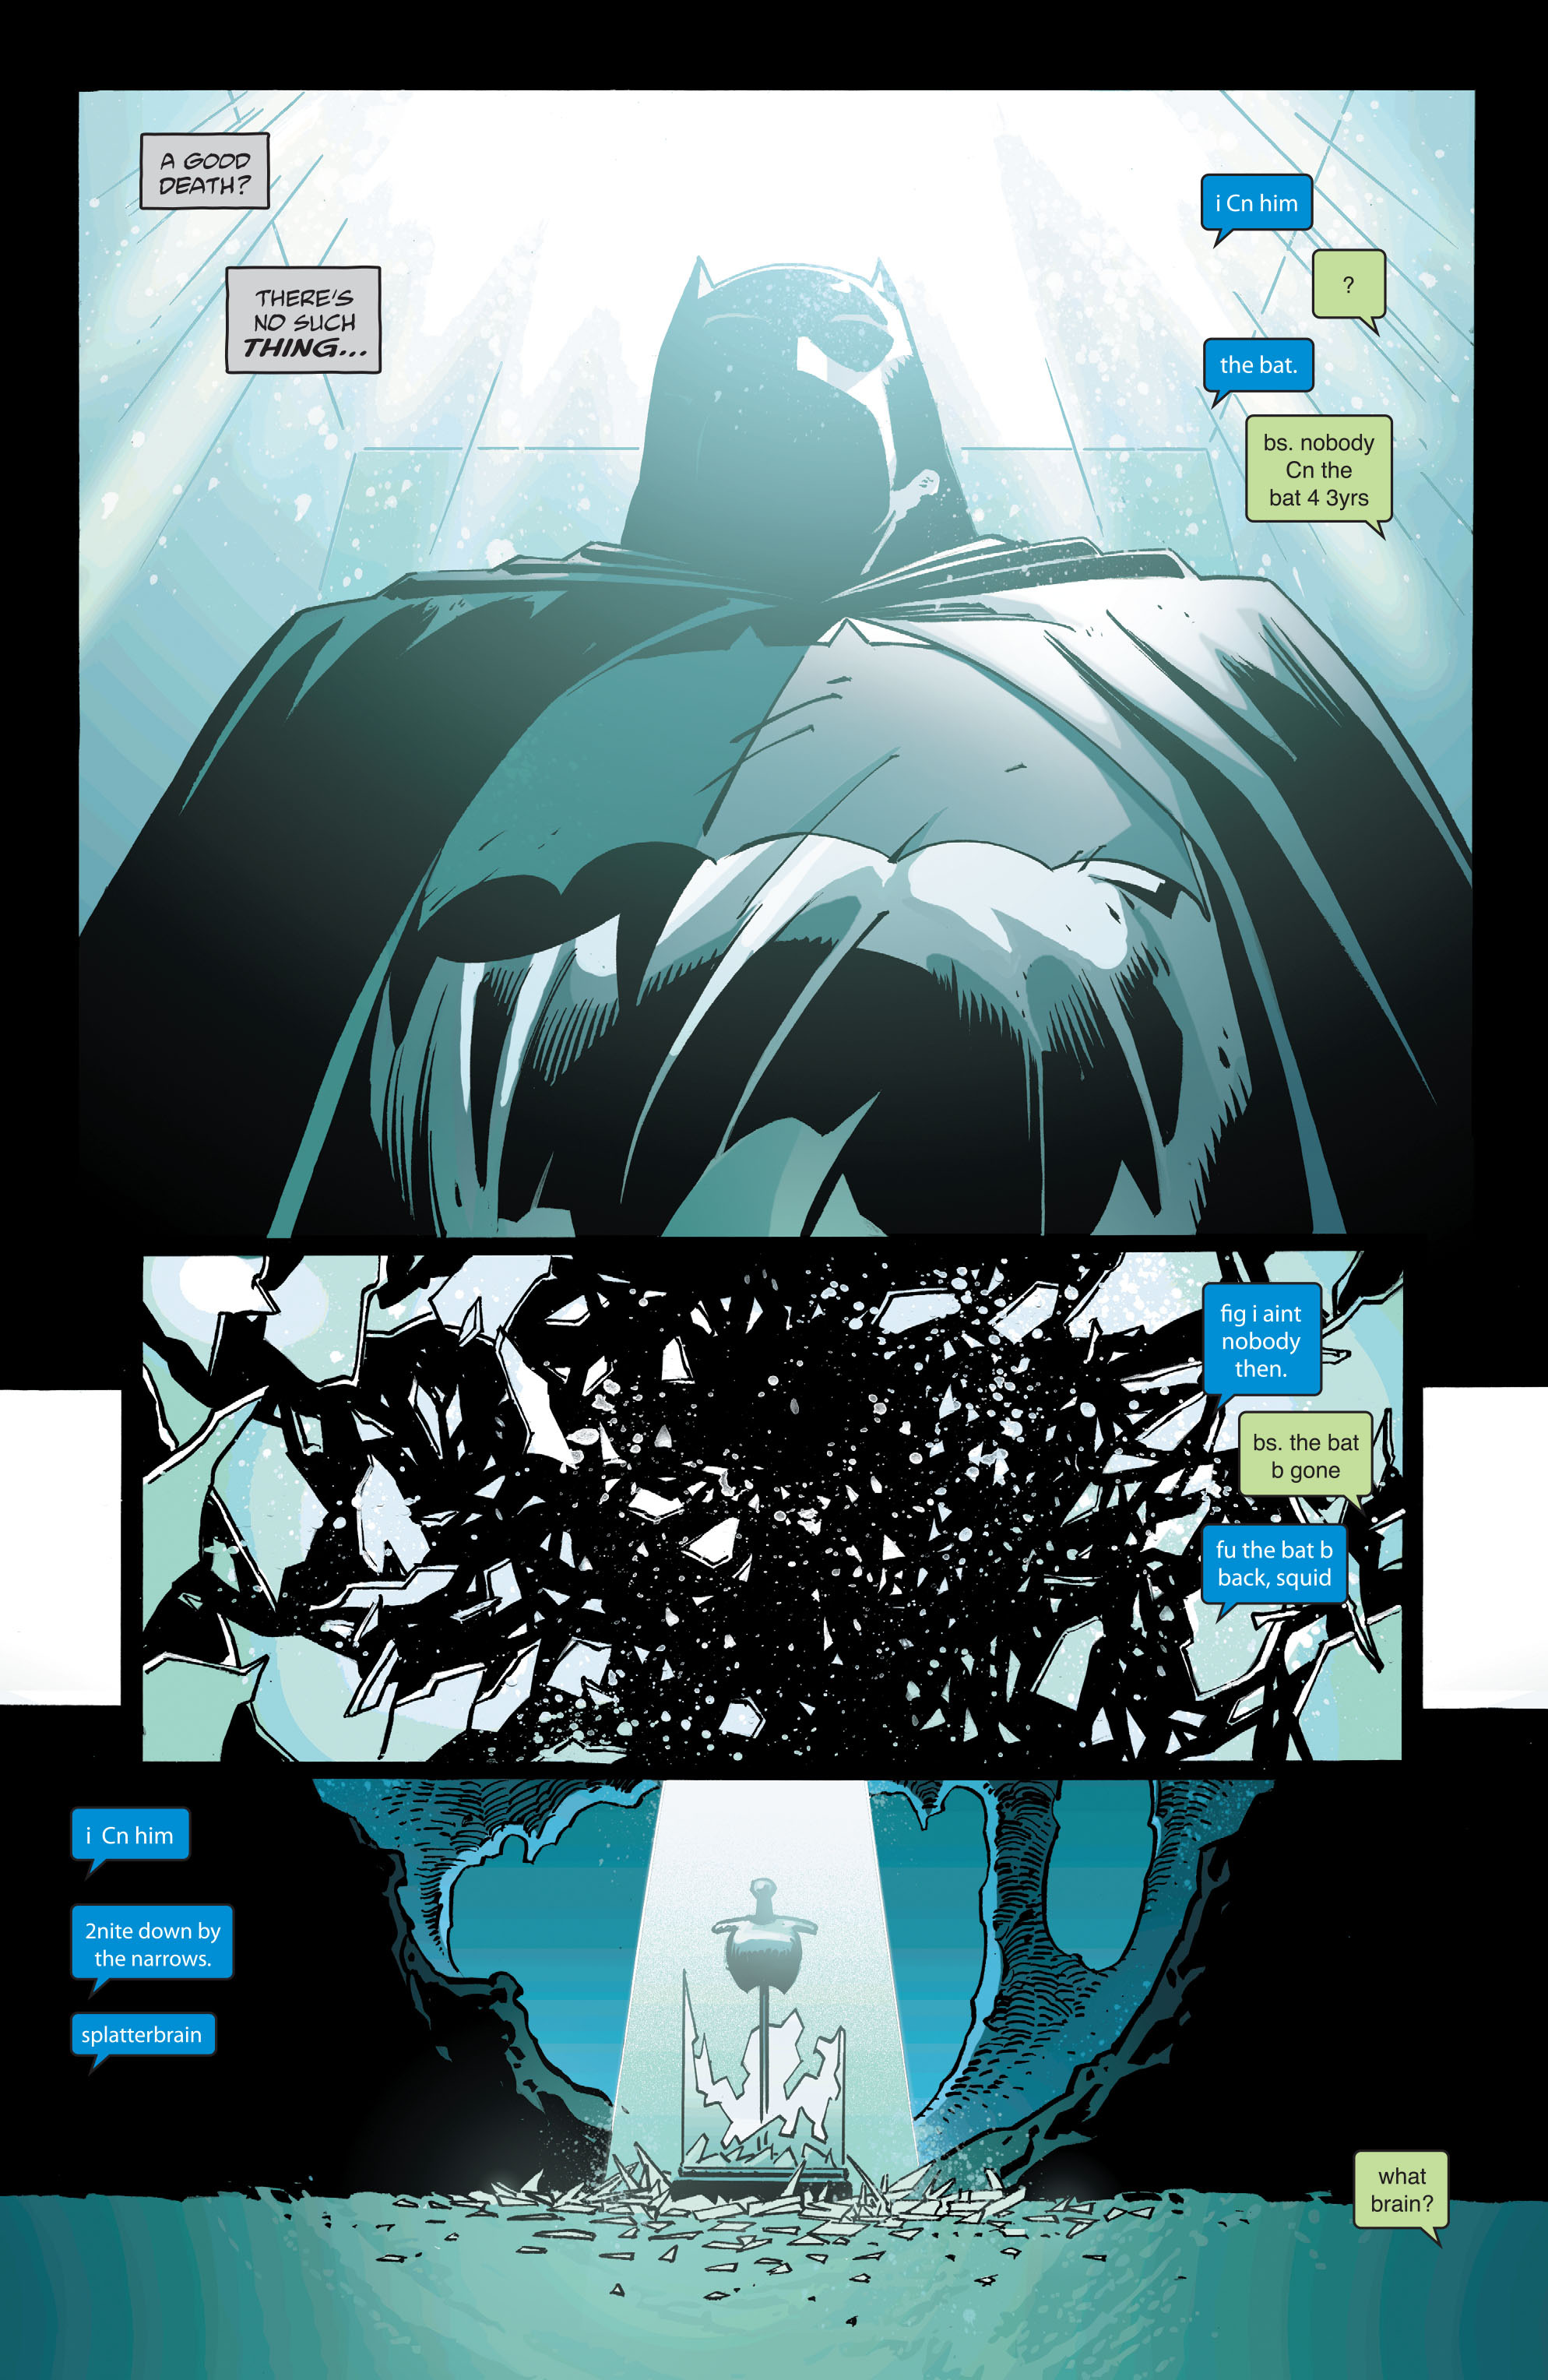 Манга ограниченный временем темный рыцарь 53. The Dark Knight III: the Master Race. Третья личность лунного рыцаря. Бэтмен комикс обложка. Темный рыцарь обложка.